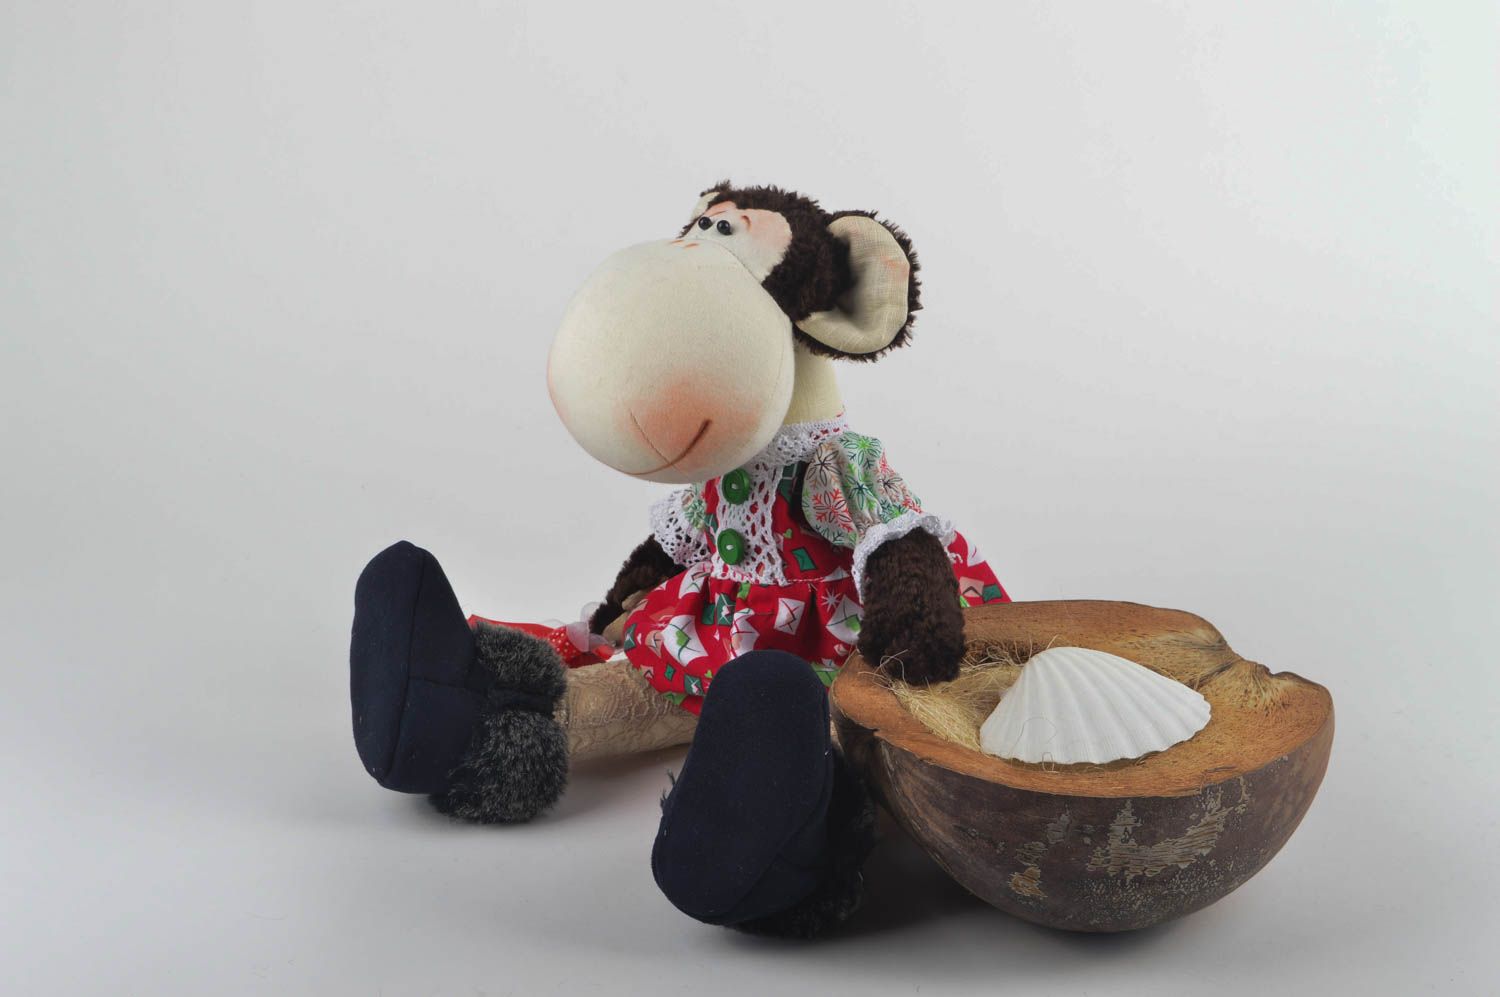 Игрушка обезьяна хэнд мэйд детская игрушка из льна мягкая игрушка авторская фото 1